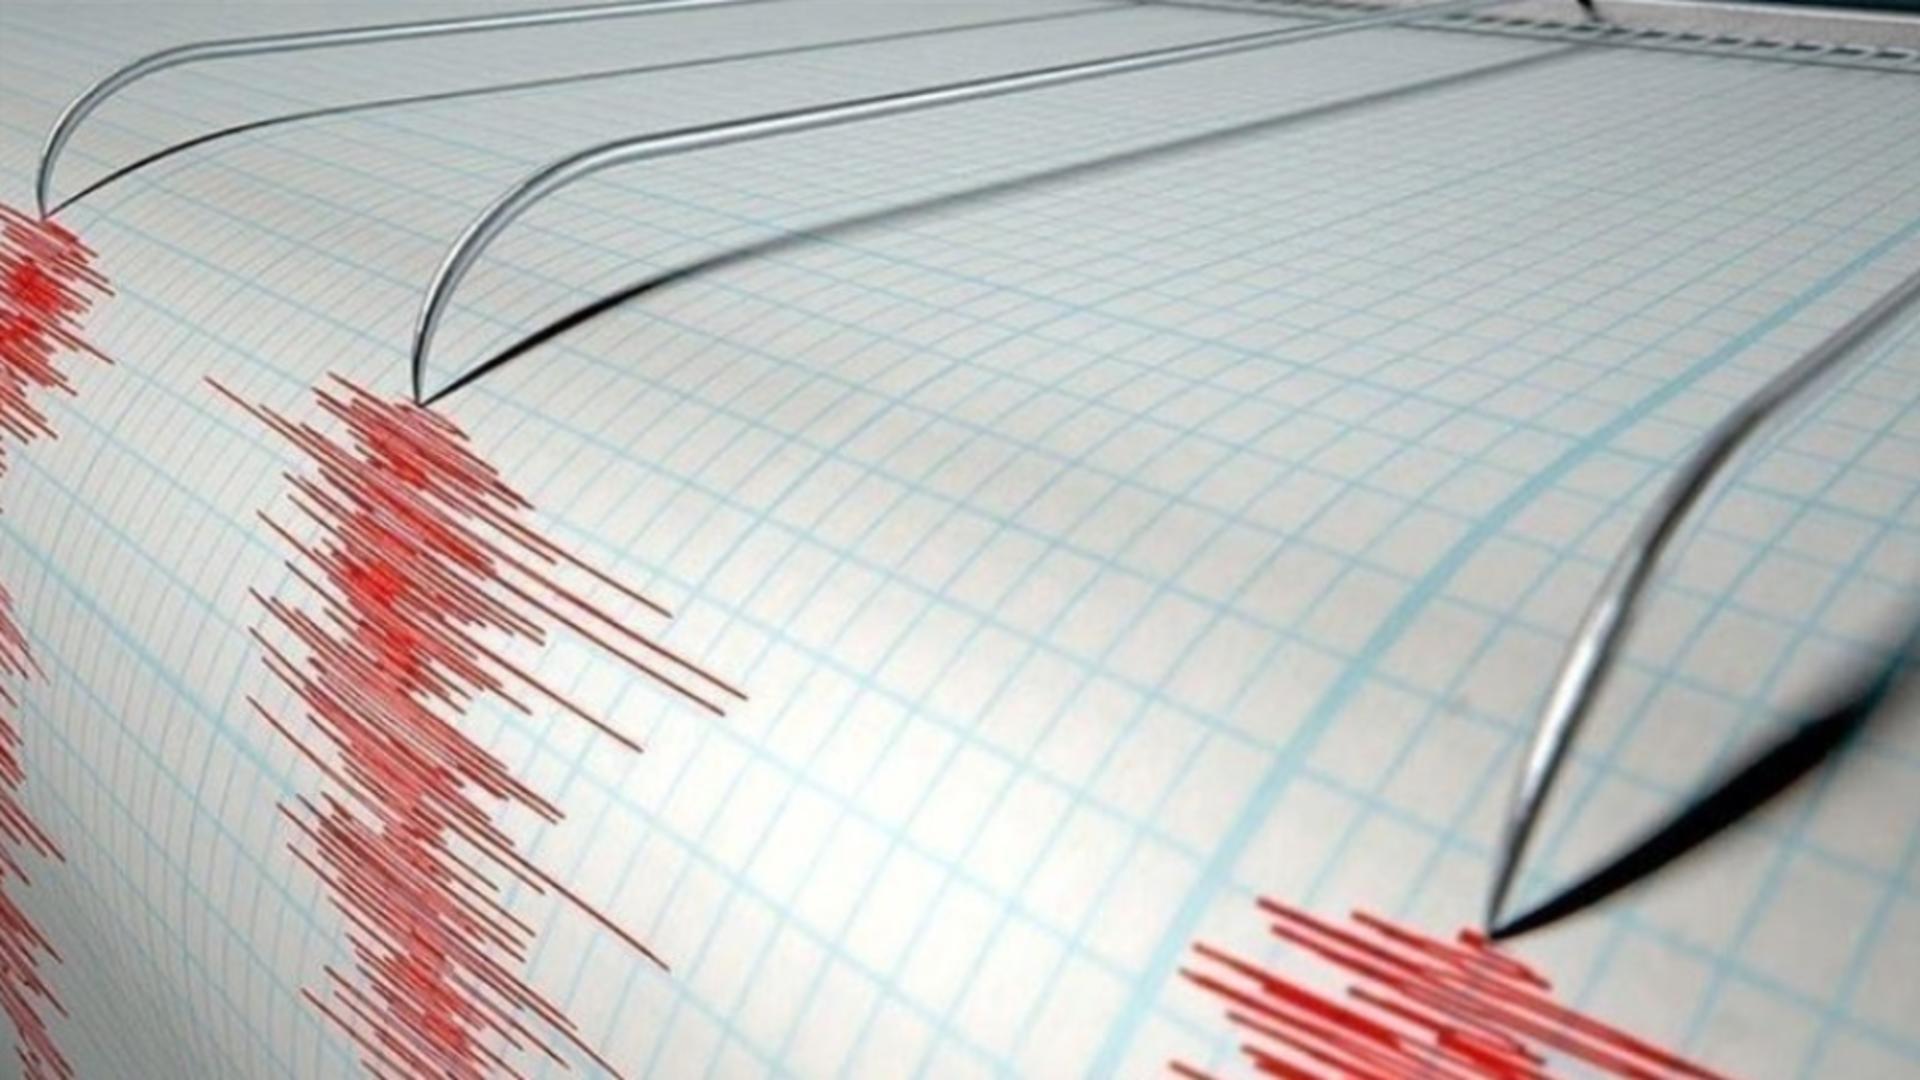 Cutremur în România